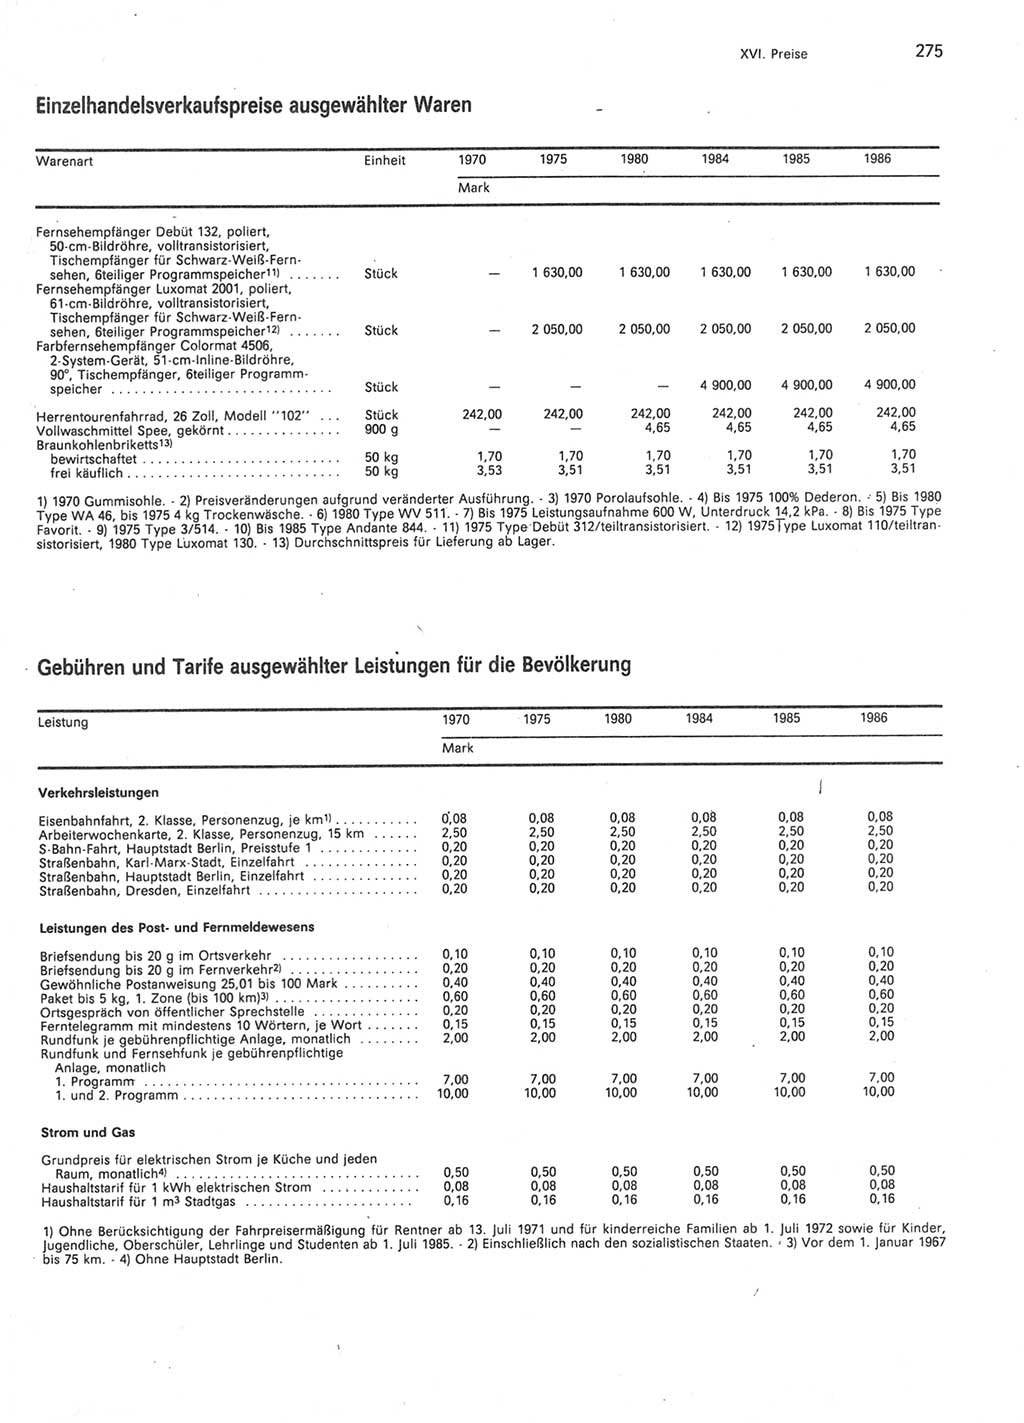 Statistisches Jahrbuch der Deutschen Demokratischen Republik (DDR) 1987, Seite 275 (Stat. Jb. DDR 1987, S. 275)